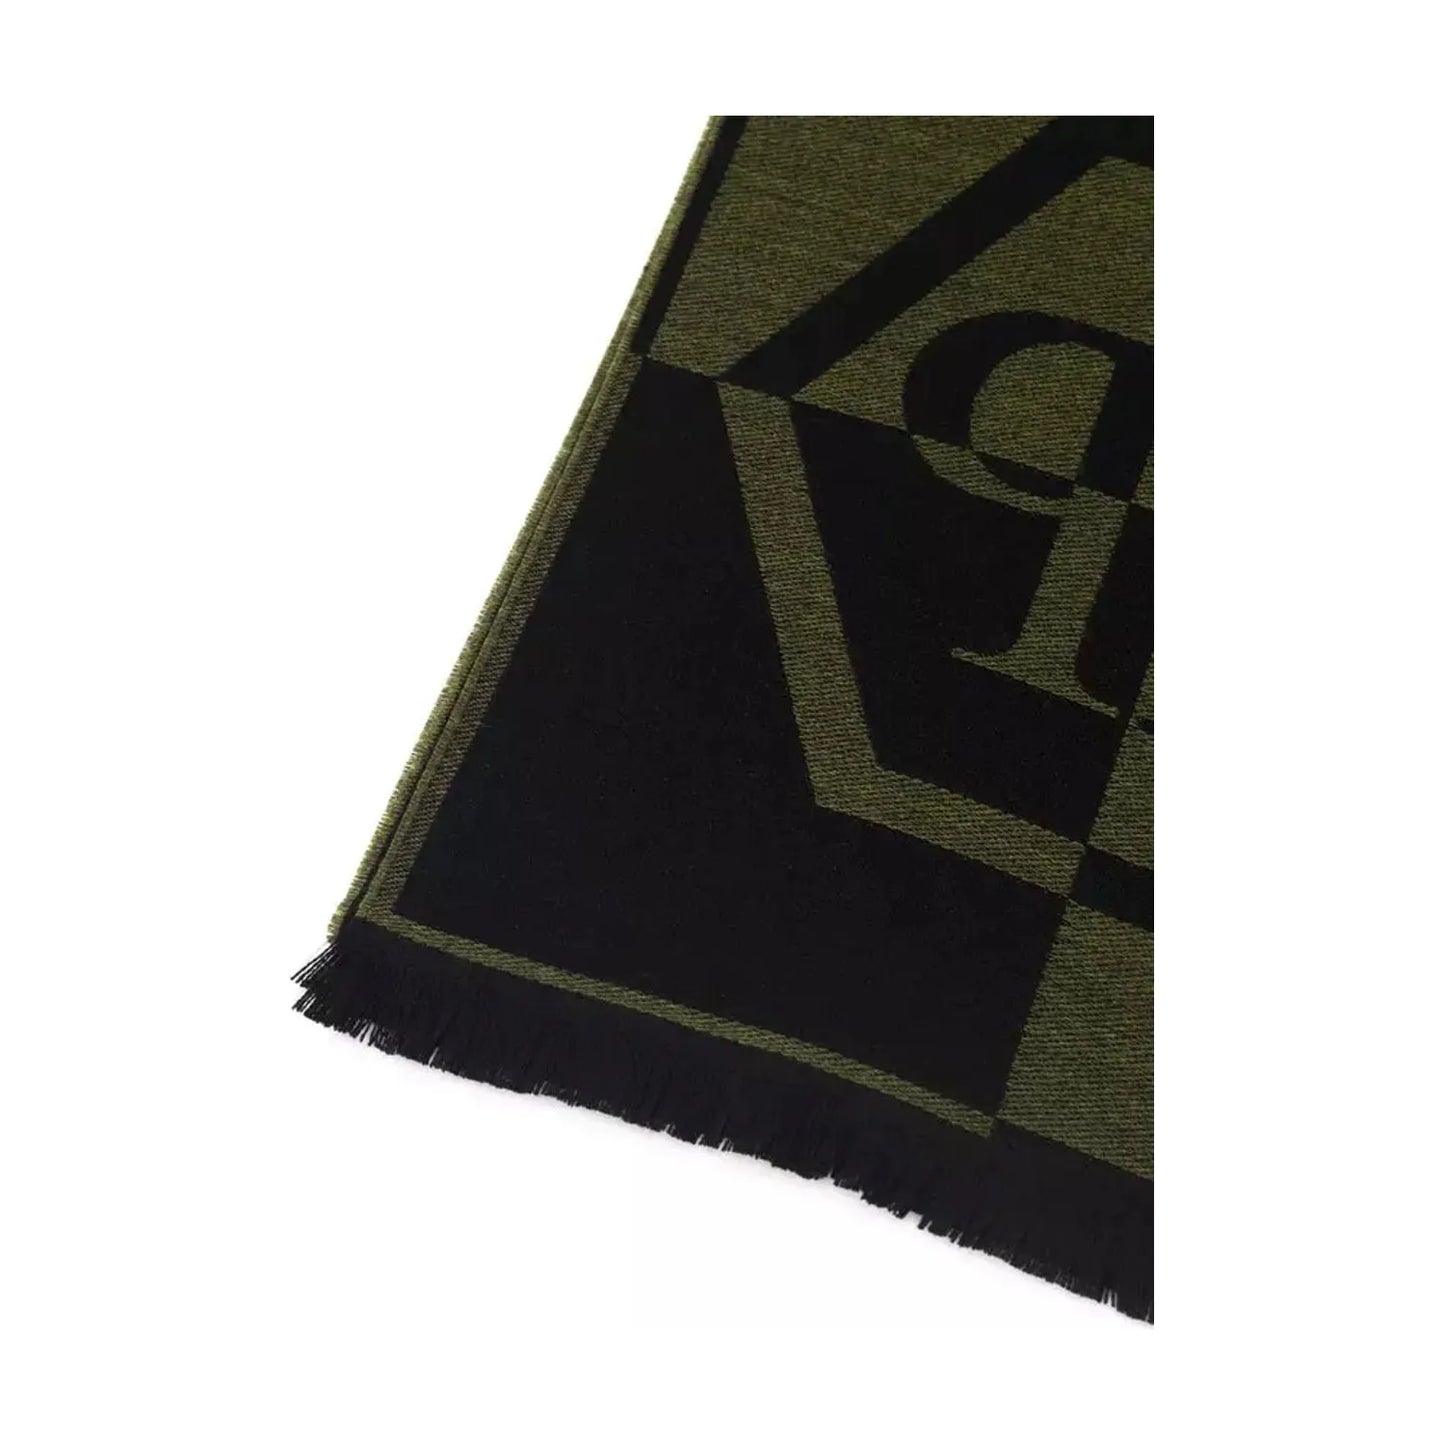 Philipp Plein Plush Fringed Logo Scarf in Lush Green green-wool-scarf-1 Wool Wrap Shawl Scarf product-22230-1228846510-24-966563cf-06a.webp